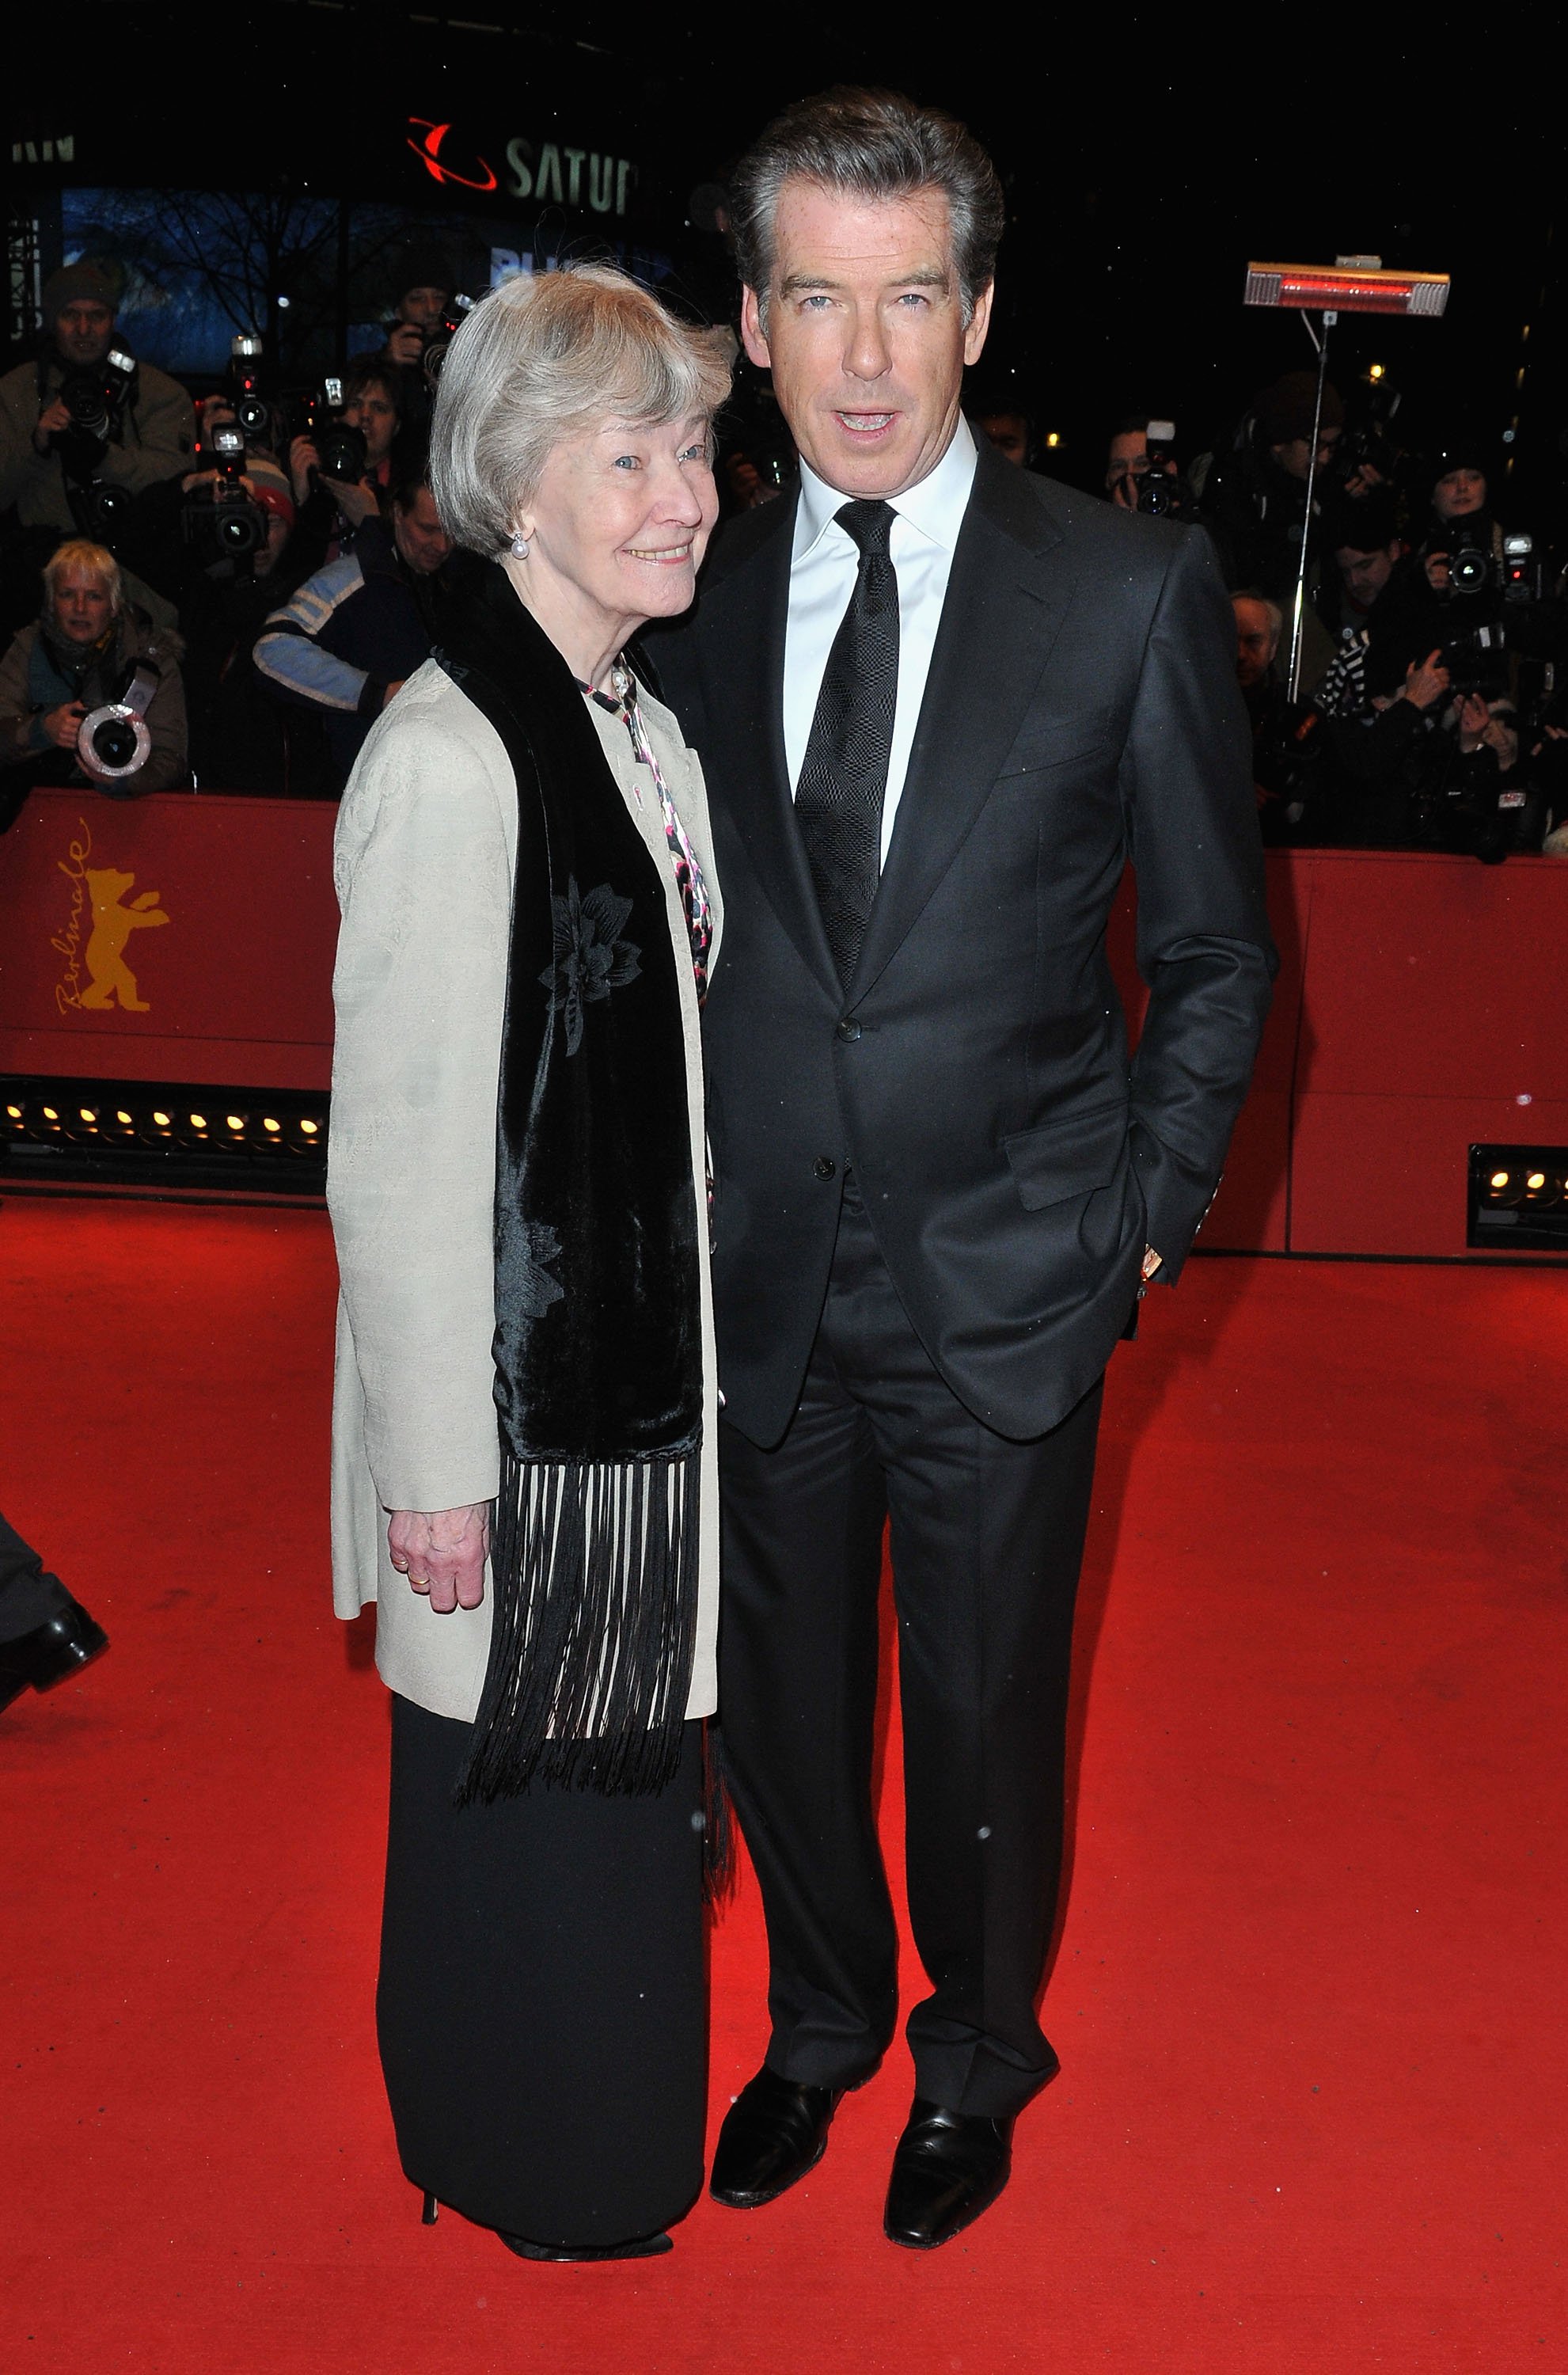 Pierce Brosnan mit seiner Mutter Mary May Smith bei der Premiere von "The Ghost Writer" während der 60. Internationalen Filmfestspiele Berlin im Berlinale Palast am 12. Februar 2010 in Berlin, Deutschland. | Quelle: Getty Images